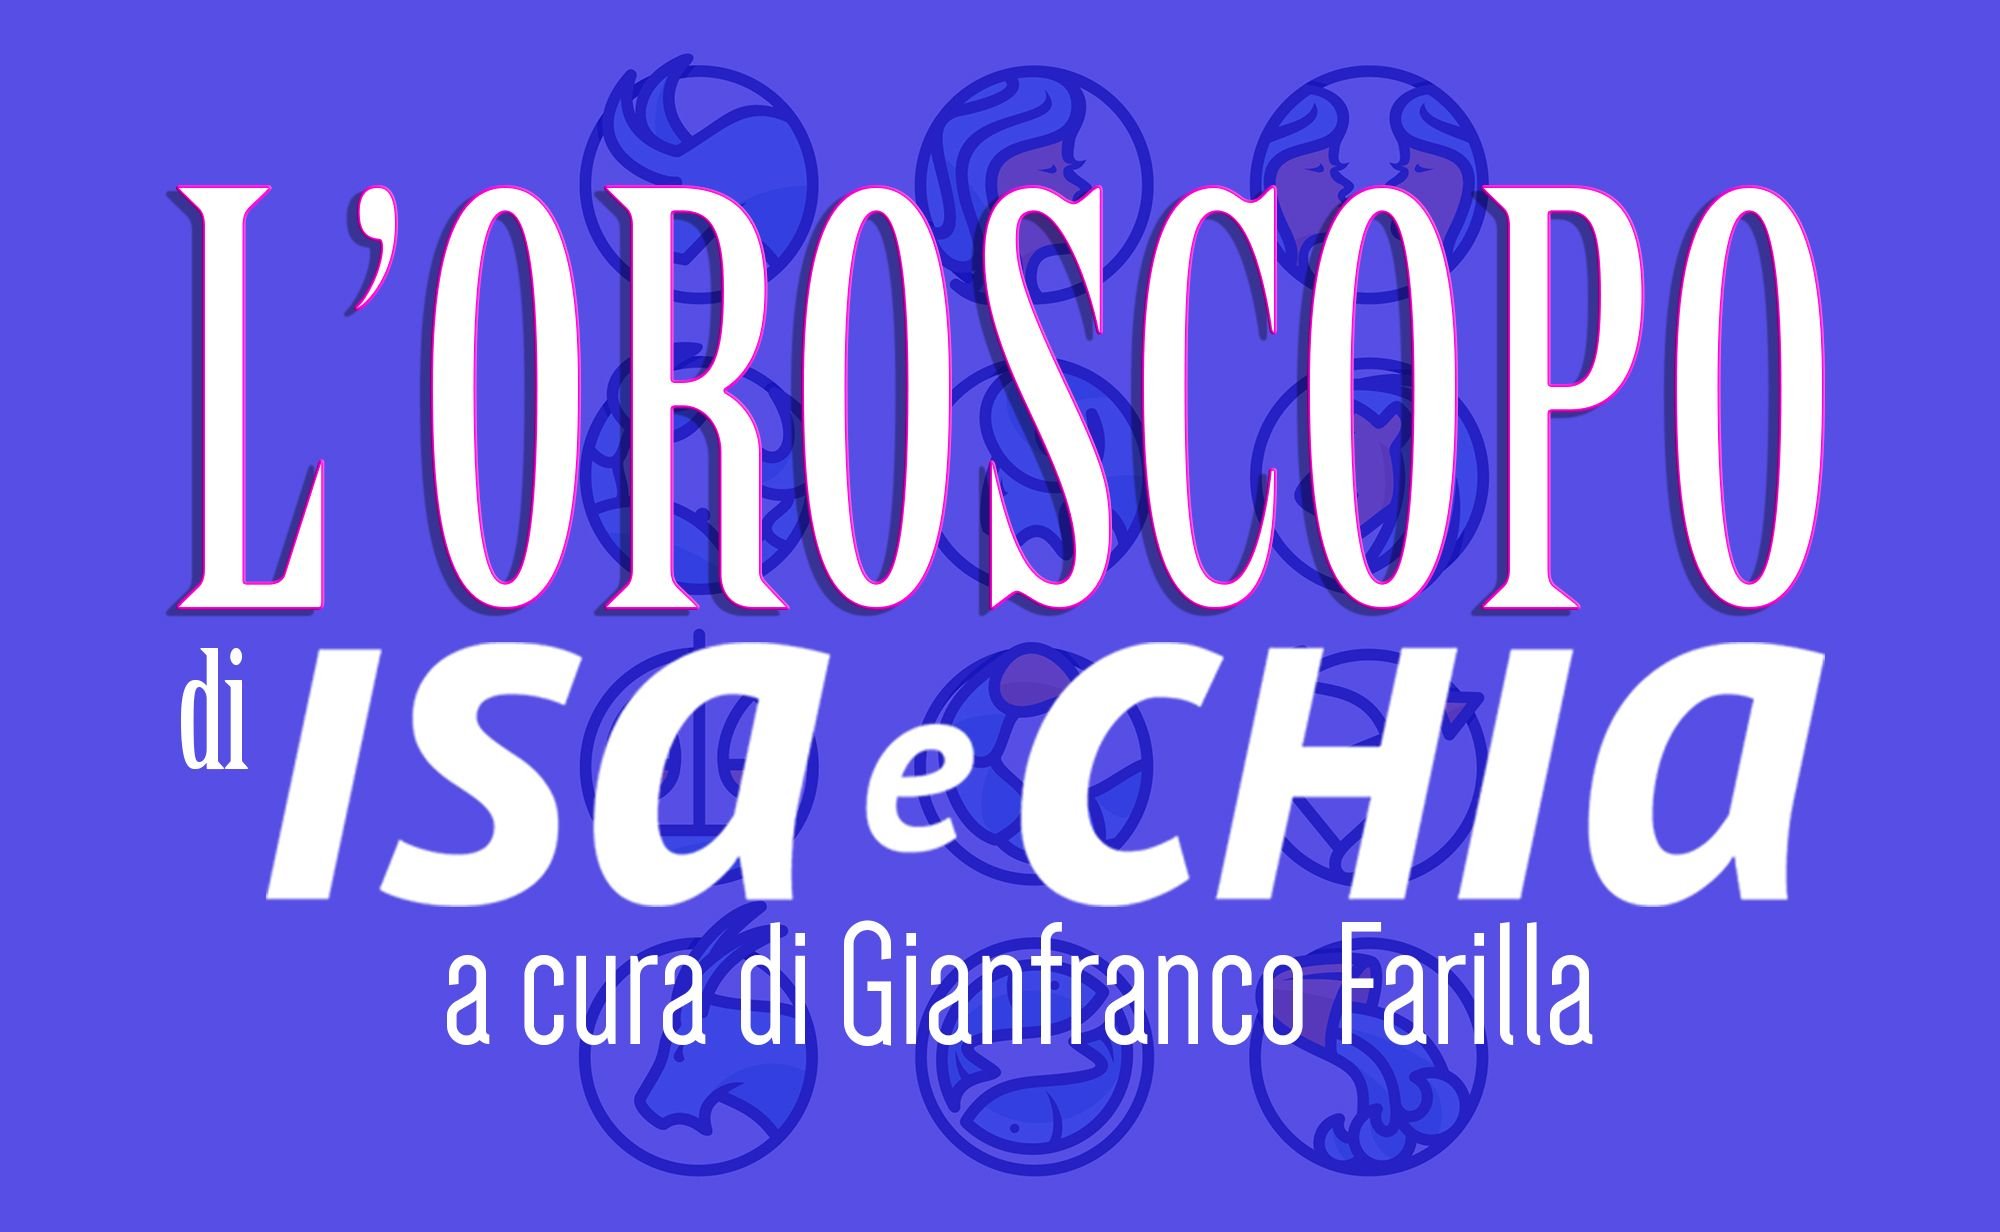 ‘L’oroscopo di Isa e Chia’ dal 15 al 21 ottobre (a cura di Gianfranco Farilla)